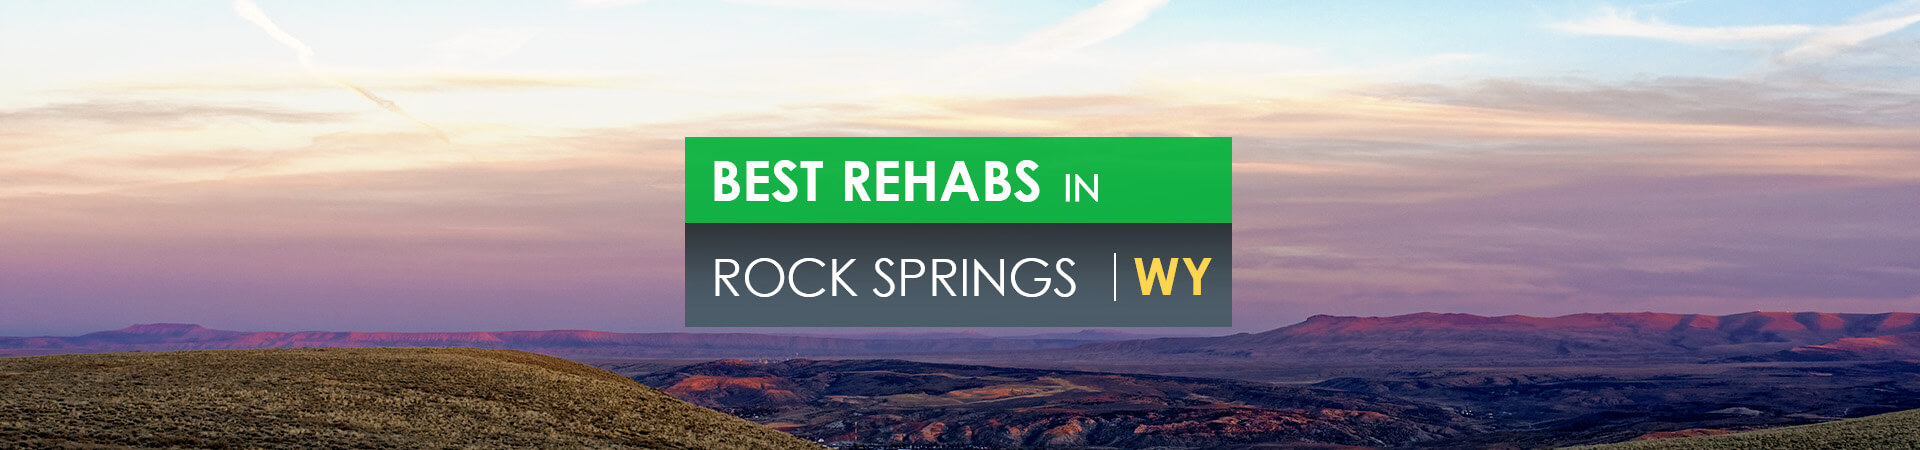 Best rehabs in Rock Springs, WY